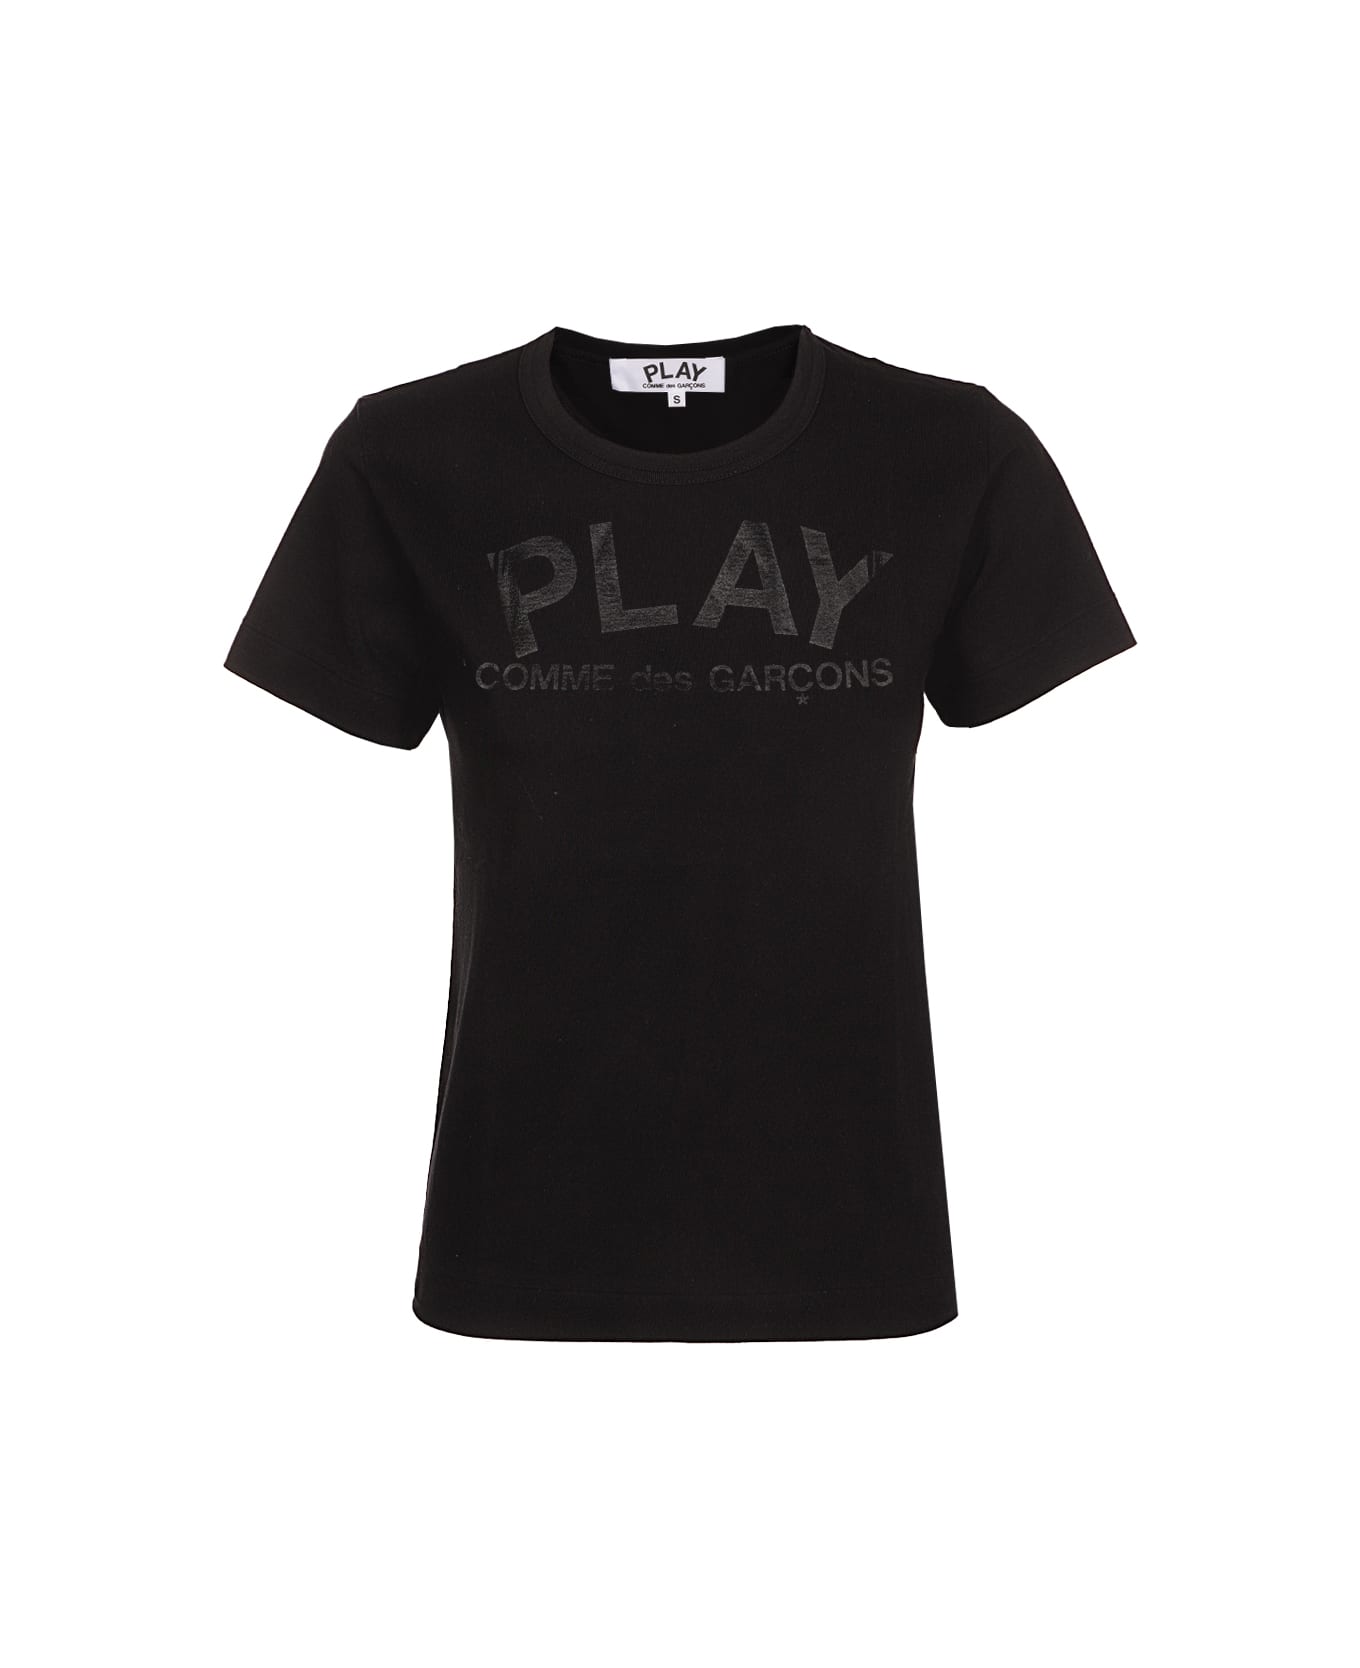 Comme des Garçons Play Play T-shirt - 1 Tシャツ